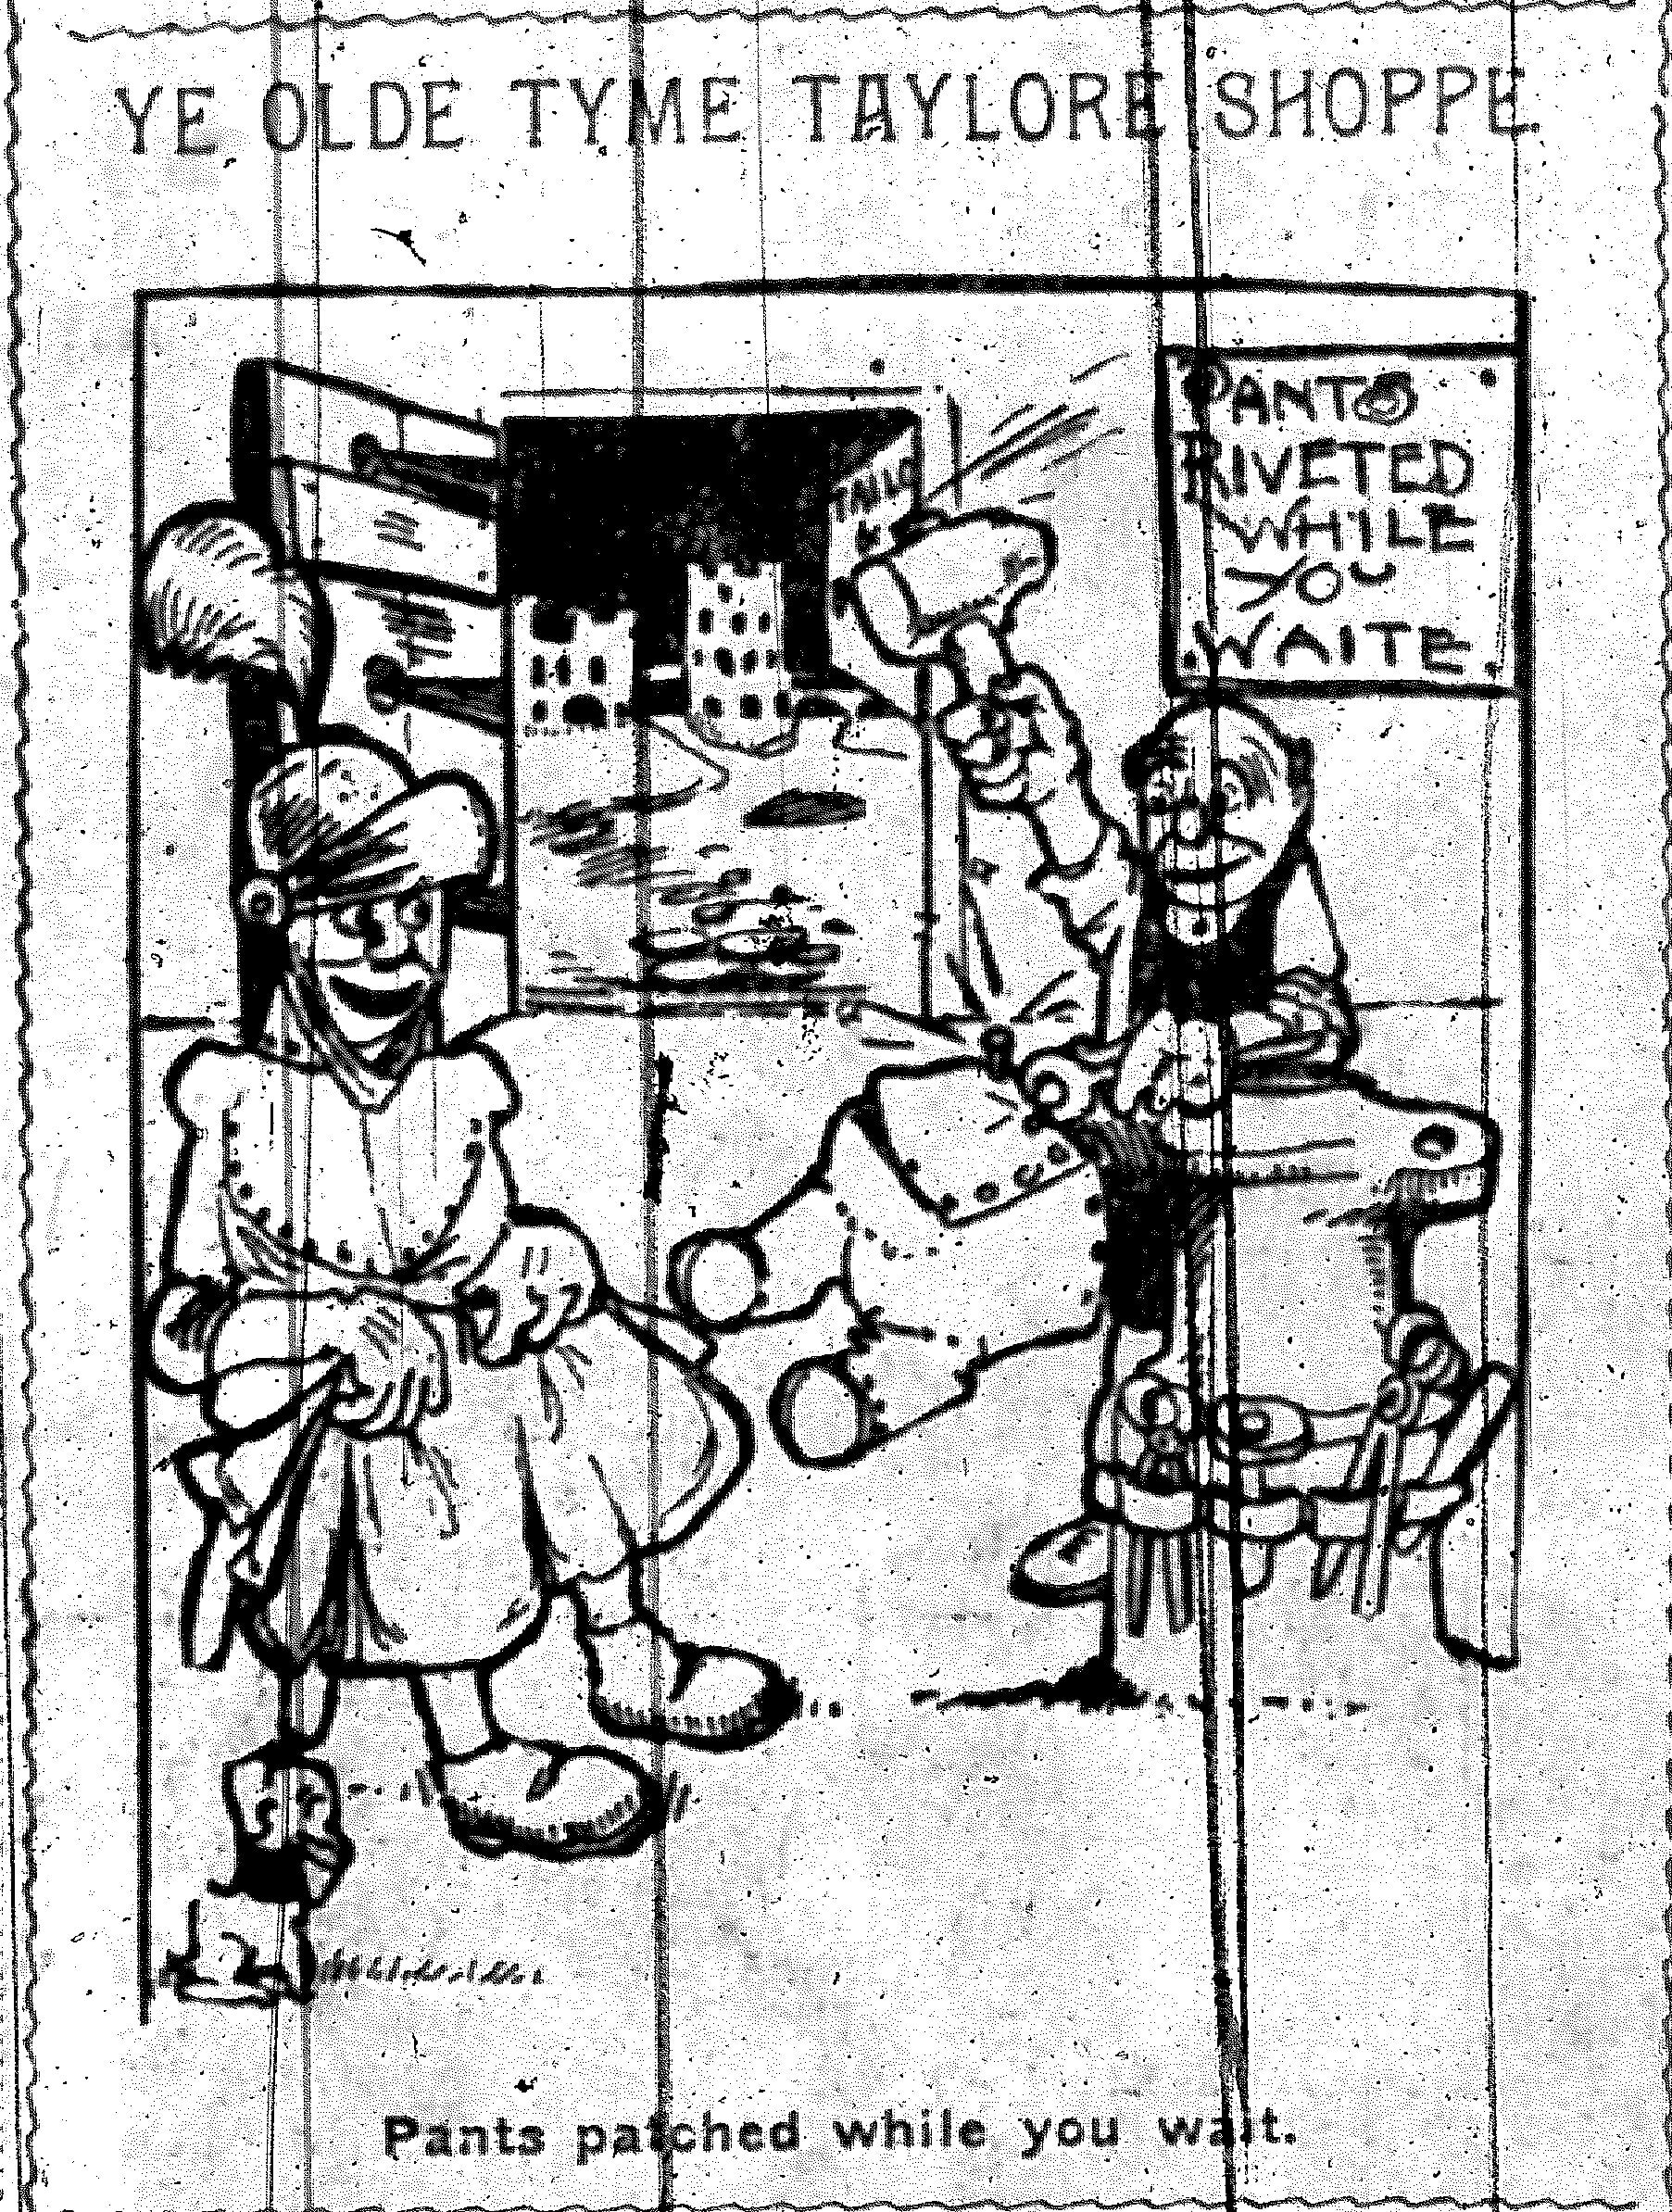 04-nyej-03-6-1901-herriman-cartoon.jpg